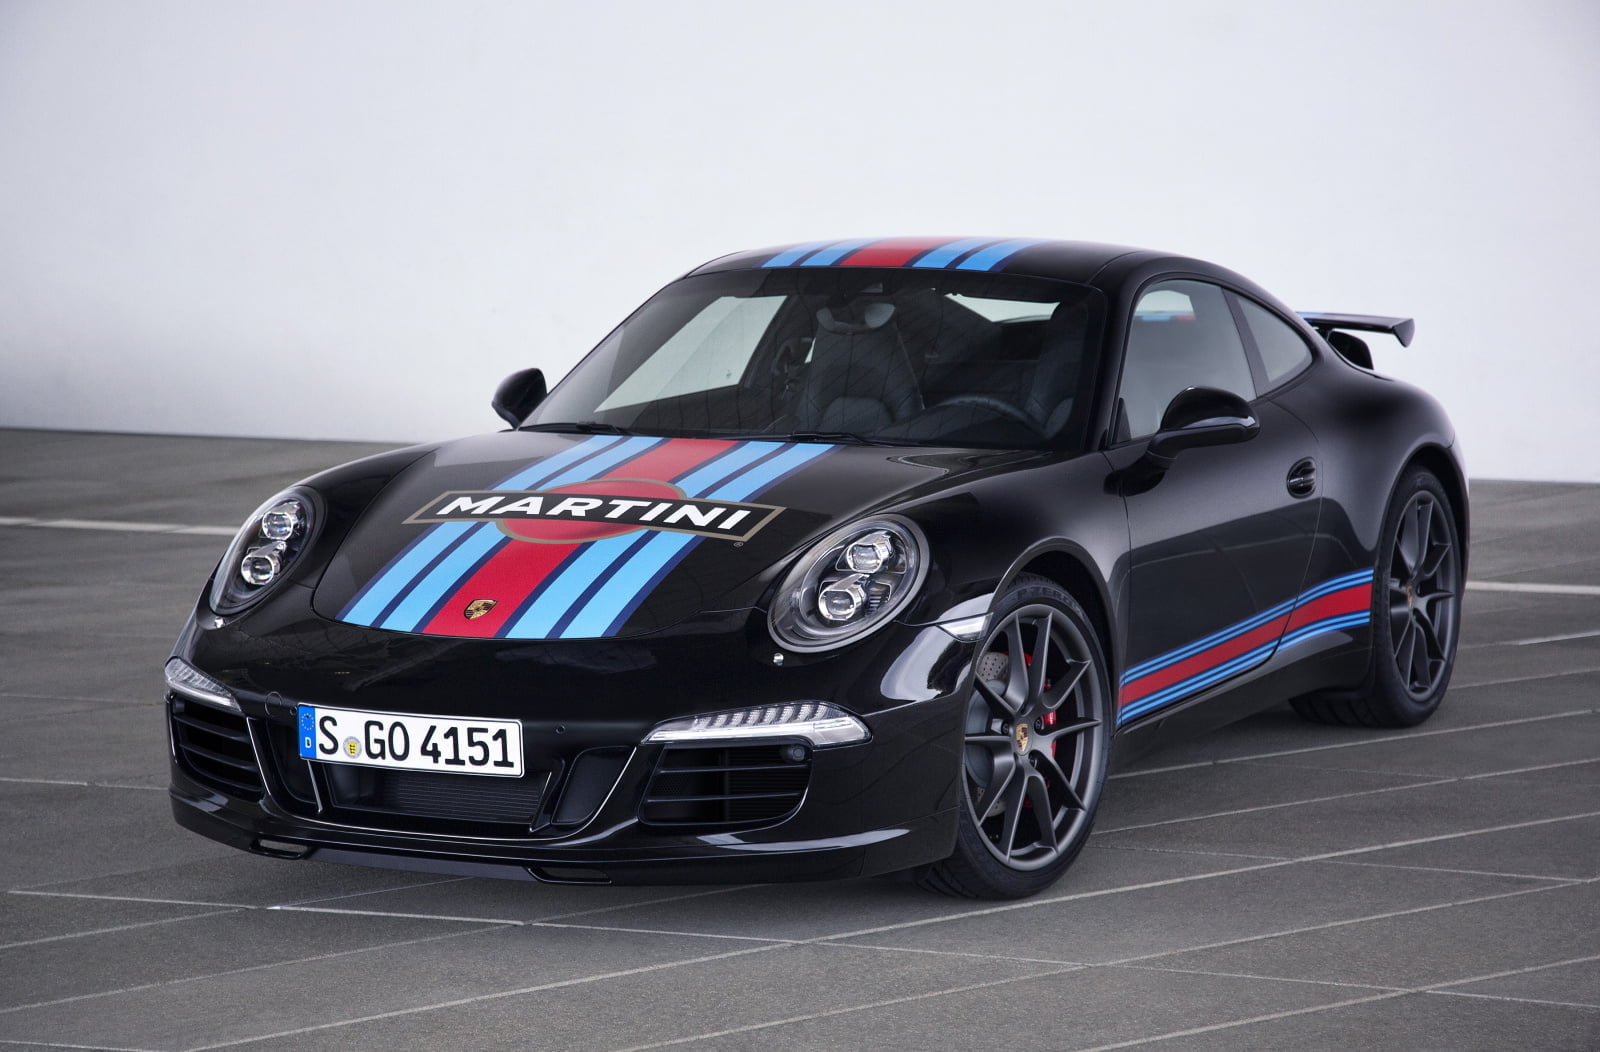 Porsche-911-Carrera-S-Martini-Racing-Edition-02